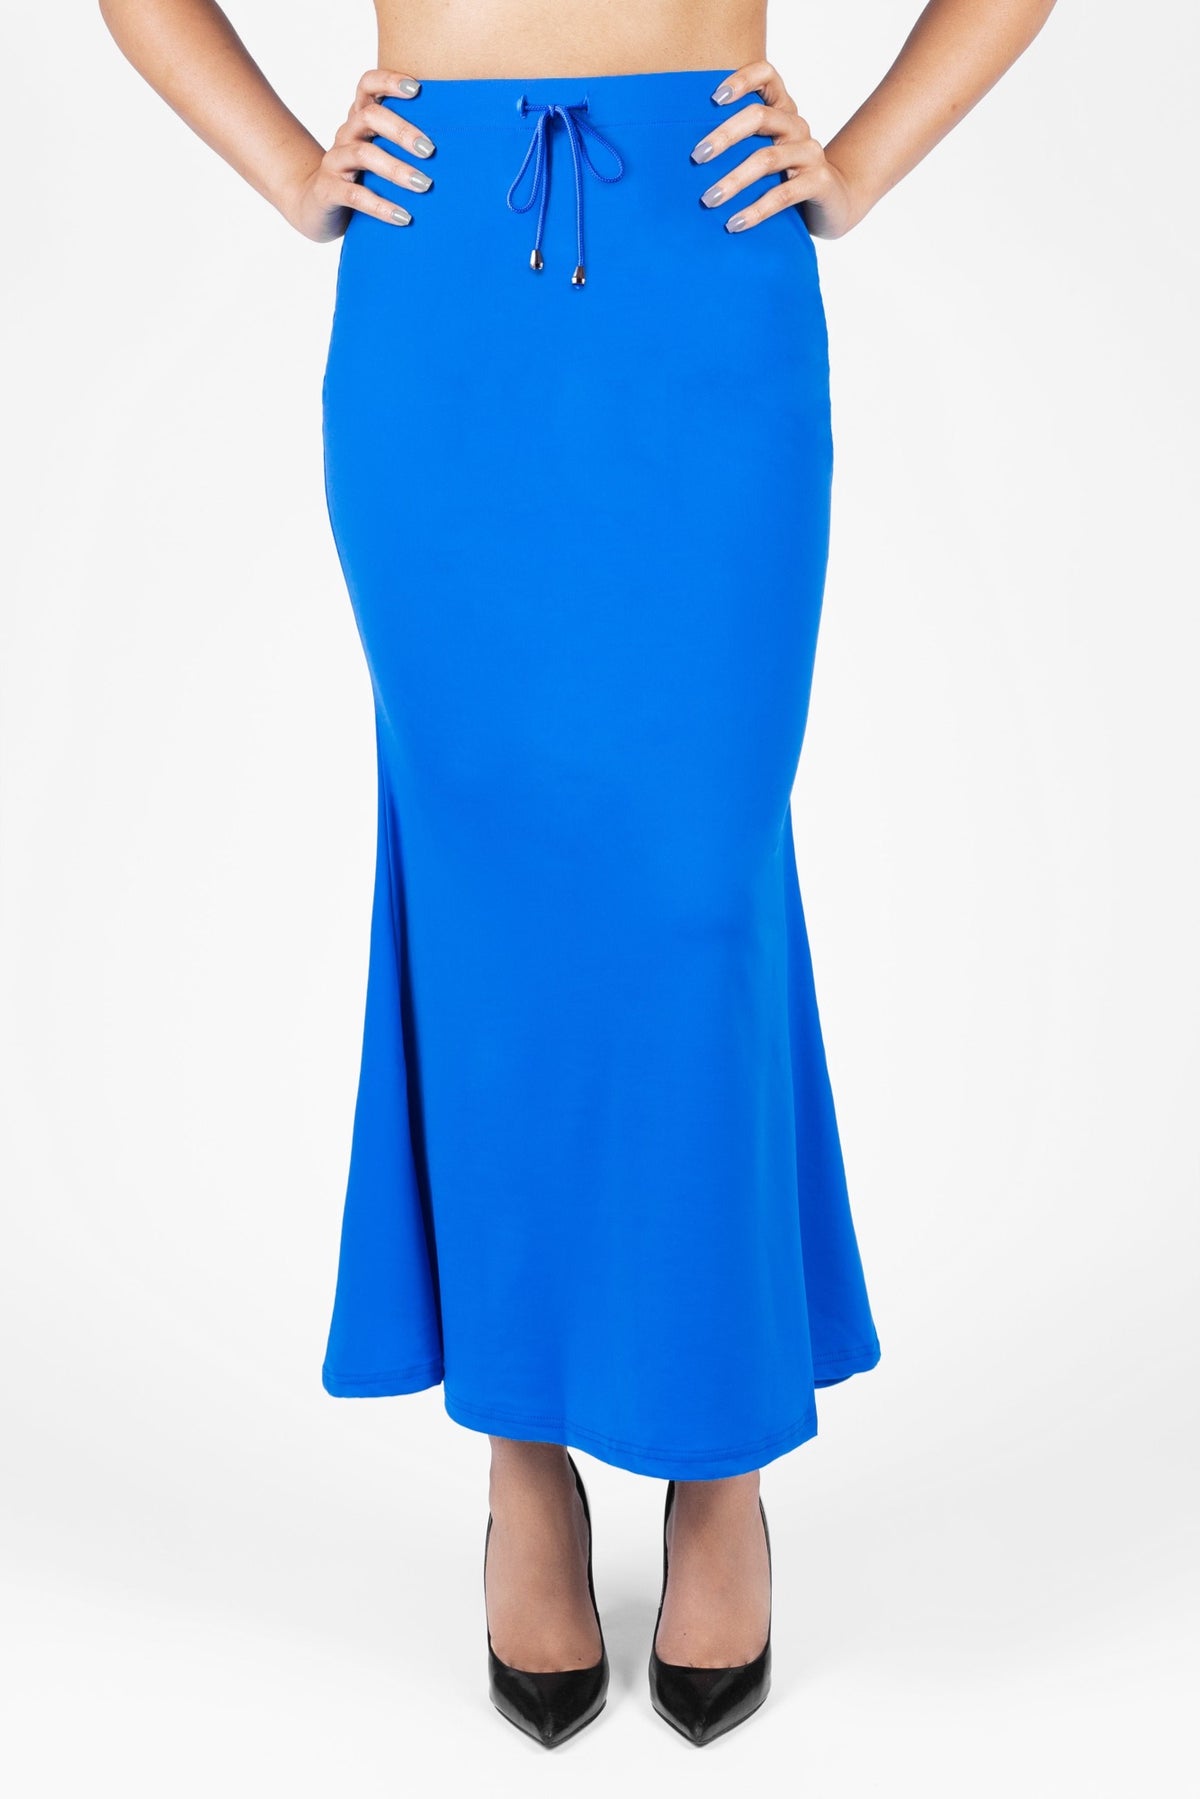 BLUE SAREE SHAPEWEAR Women's Stretchable Skirt Petticoat Lehanga Fabric  Craft Mermaid Skirt Sari Skirt Elasticated Petticoat Party Wear -   Ireland